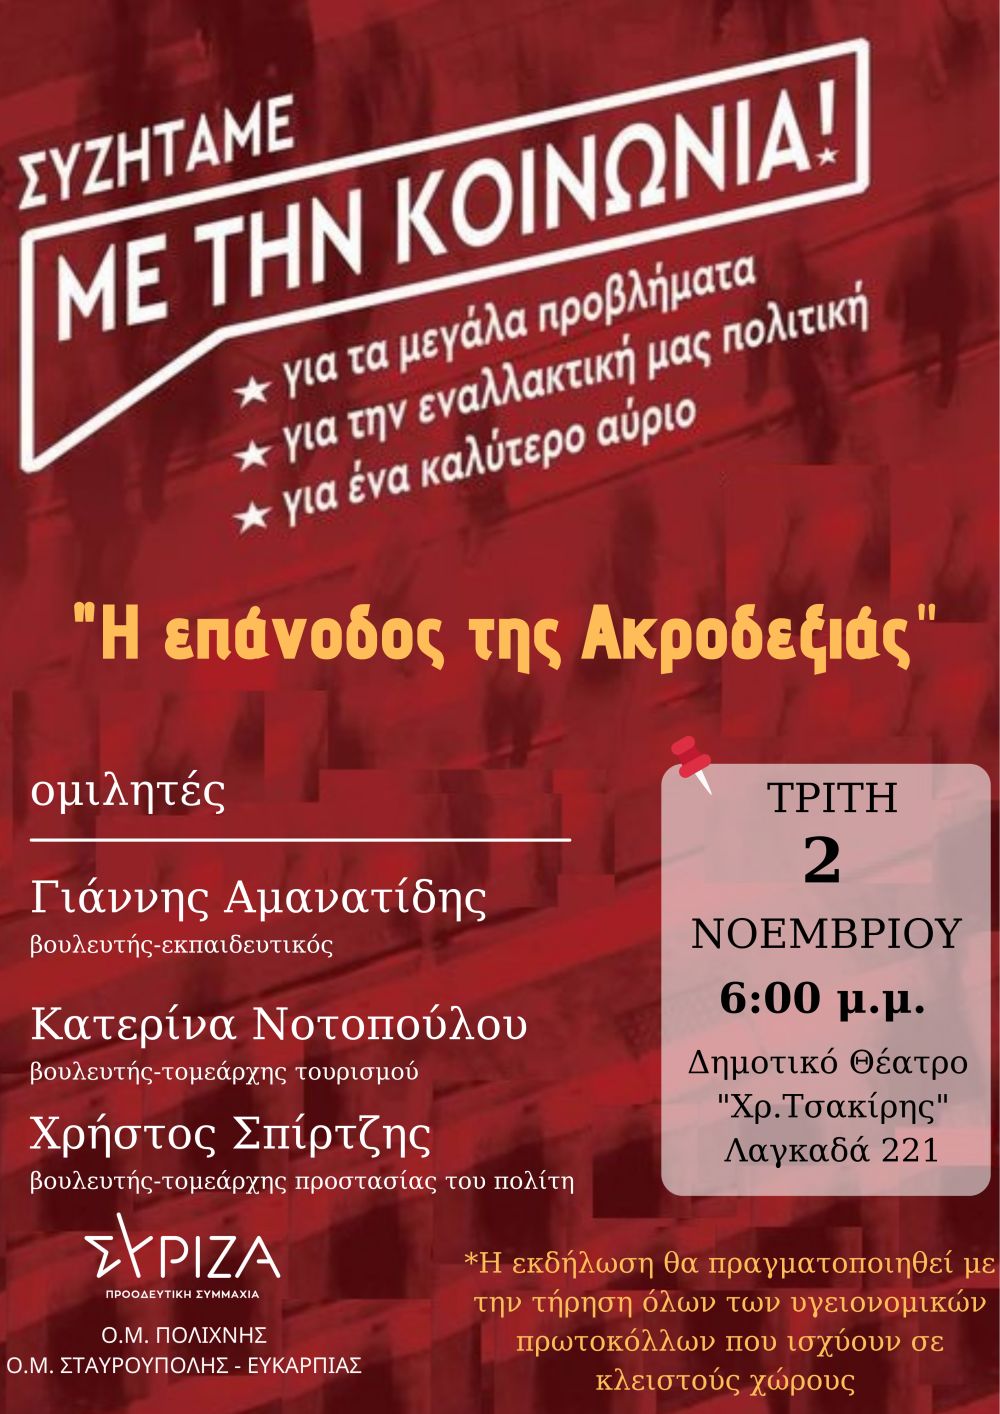 Εκδήλωση-συζήτηση των Ο.Μ. Πολίχνης και Σταυρούπολης-Ευκαρπίας του ΣΥΡΙΖΑ-Π.Σ. για την επάνοδο της ακροδεξιάς